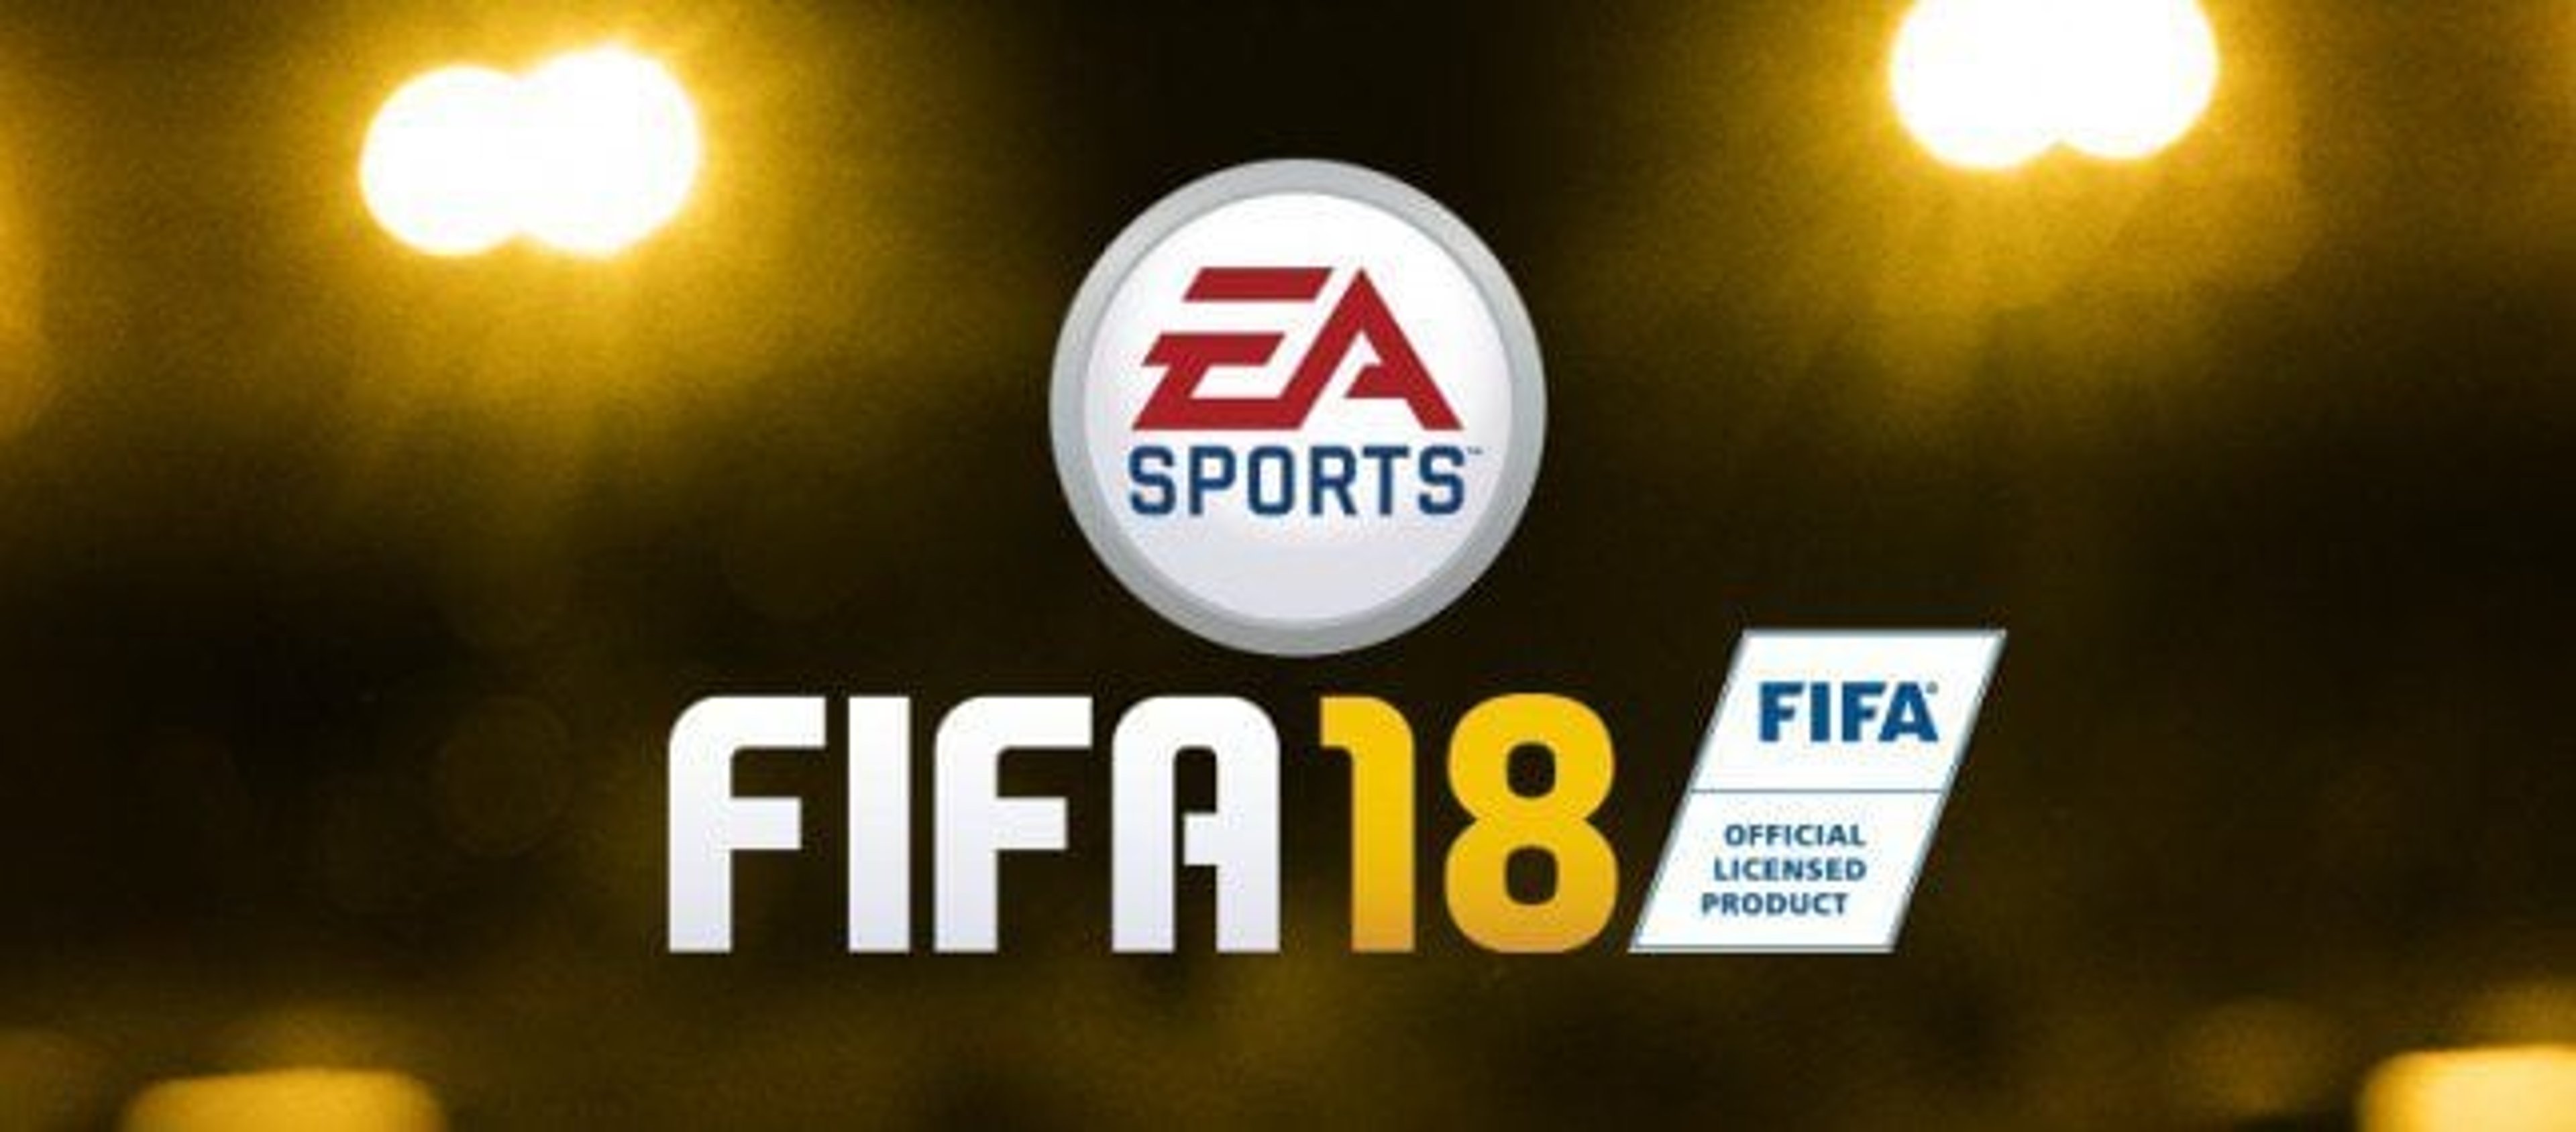 FIFA 18: Ecco il trailer ufficiale, dettagli e data di uscita! Copertina